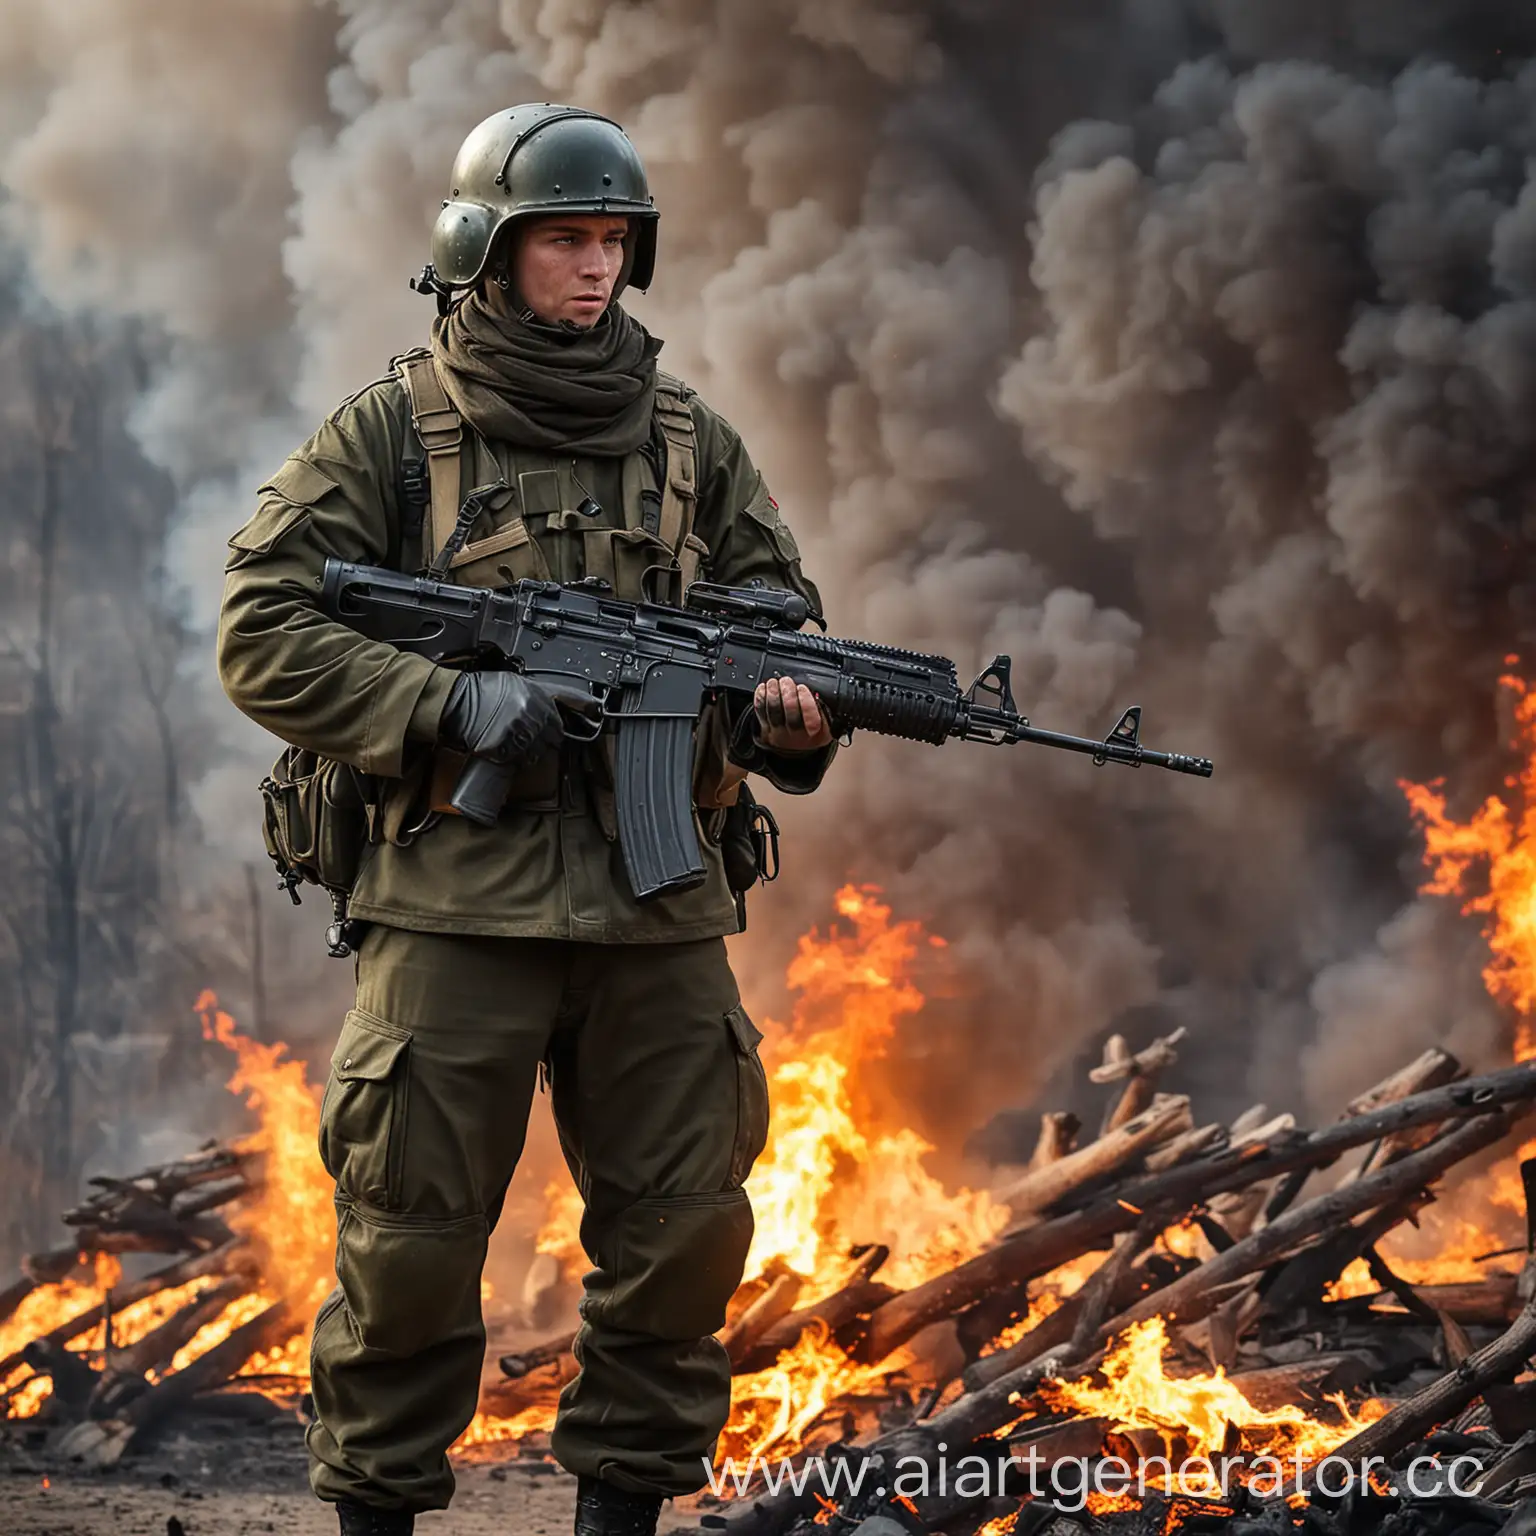 Russian-Soldier-with-PKM-Machine-Gun-Amidst-Fiery-Background